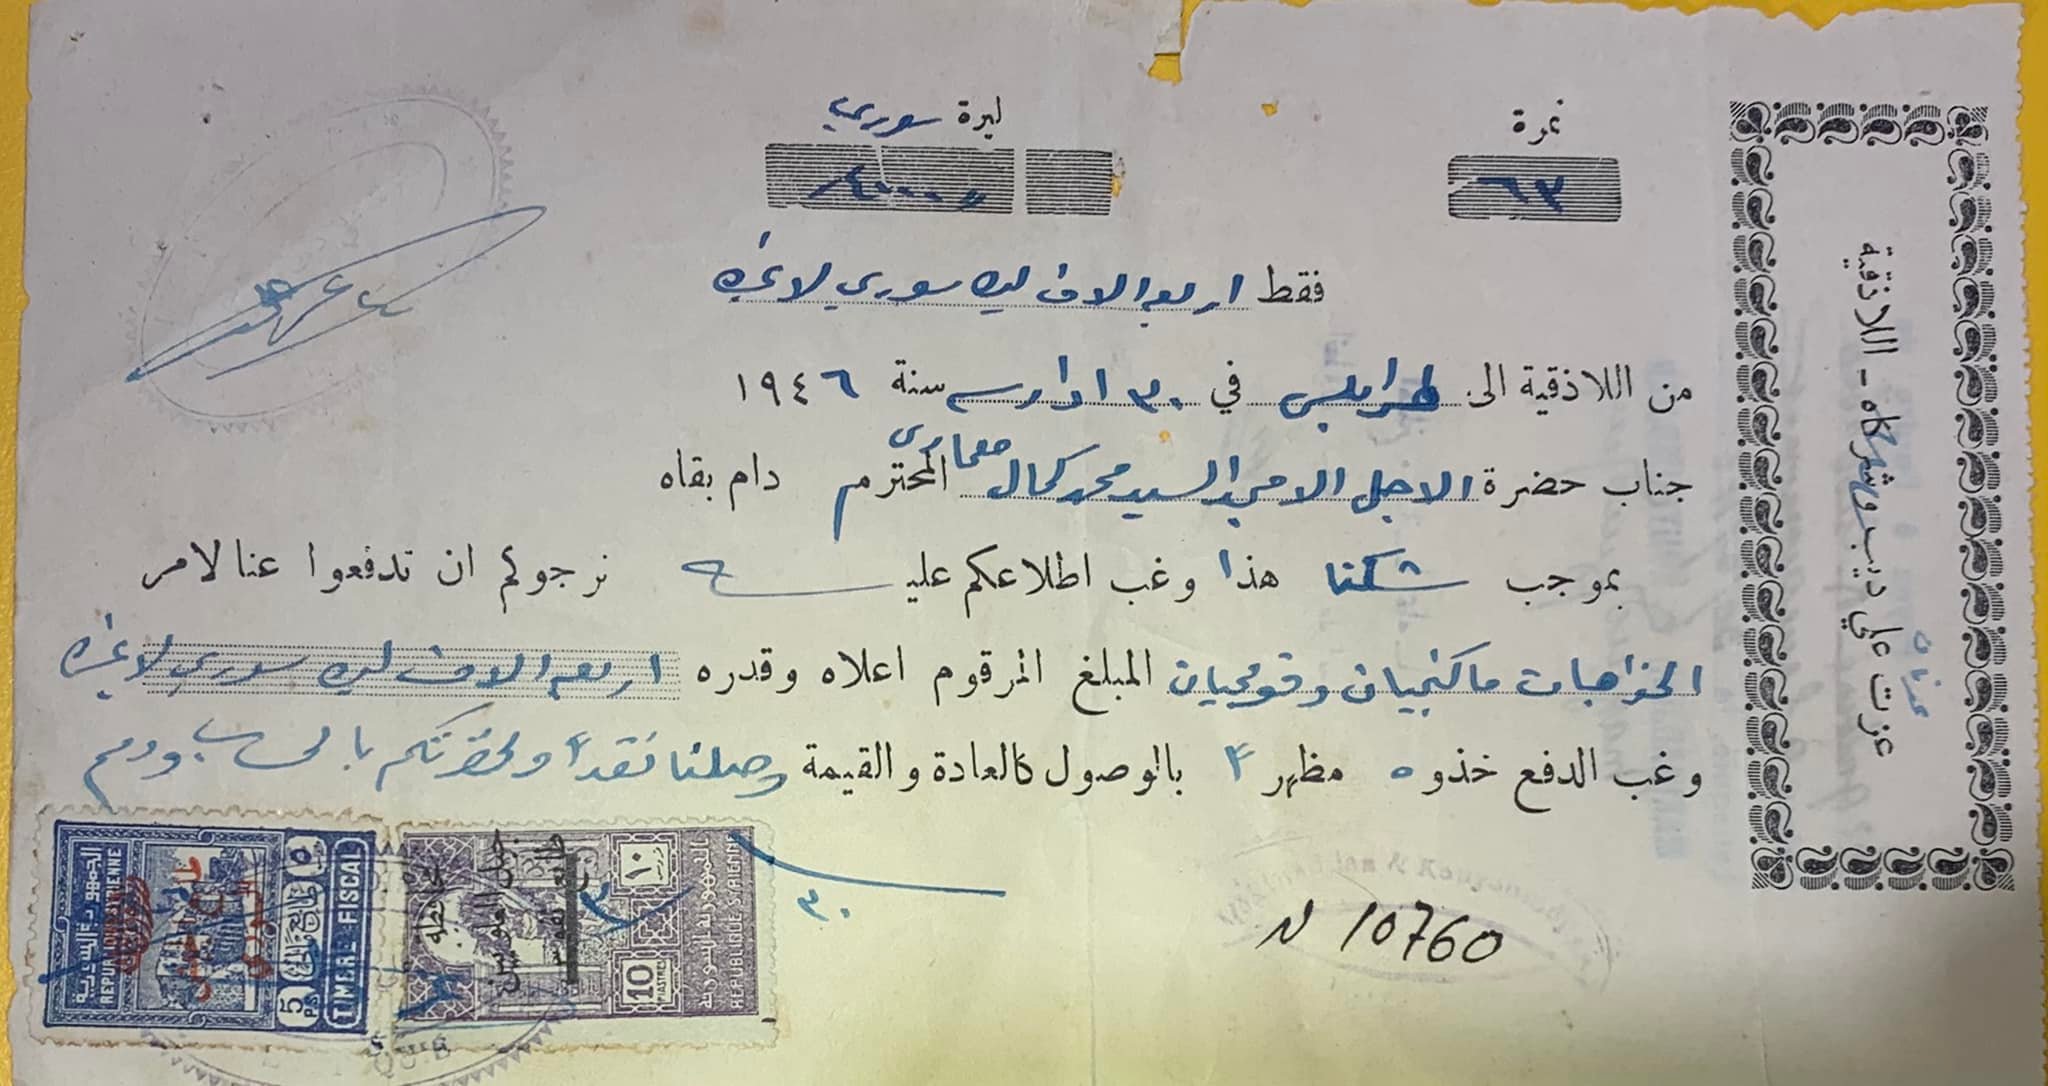 التاريخ السوري المعاصر - سند سحب تجاري بمبلغ 4000 ليرة سورية مرسل من اللاذقية إلى طرابلس عام 1946